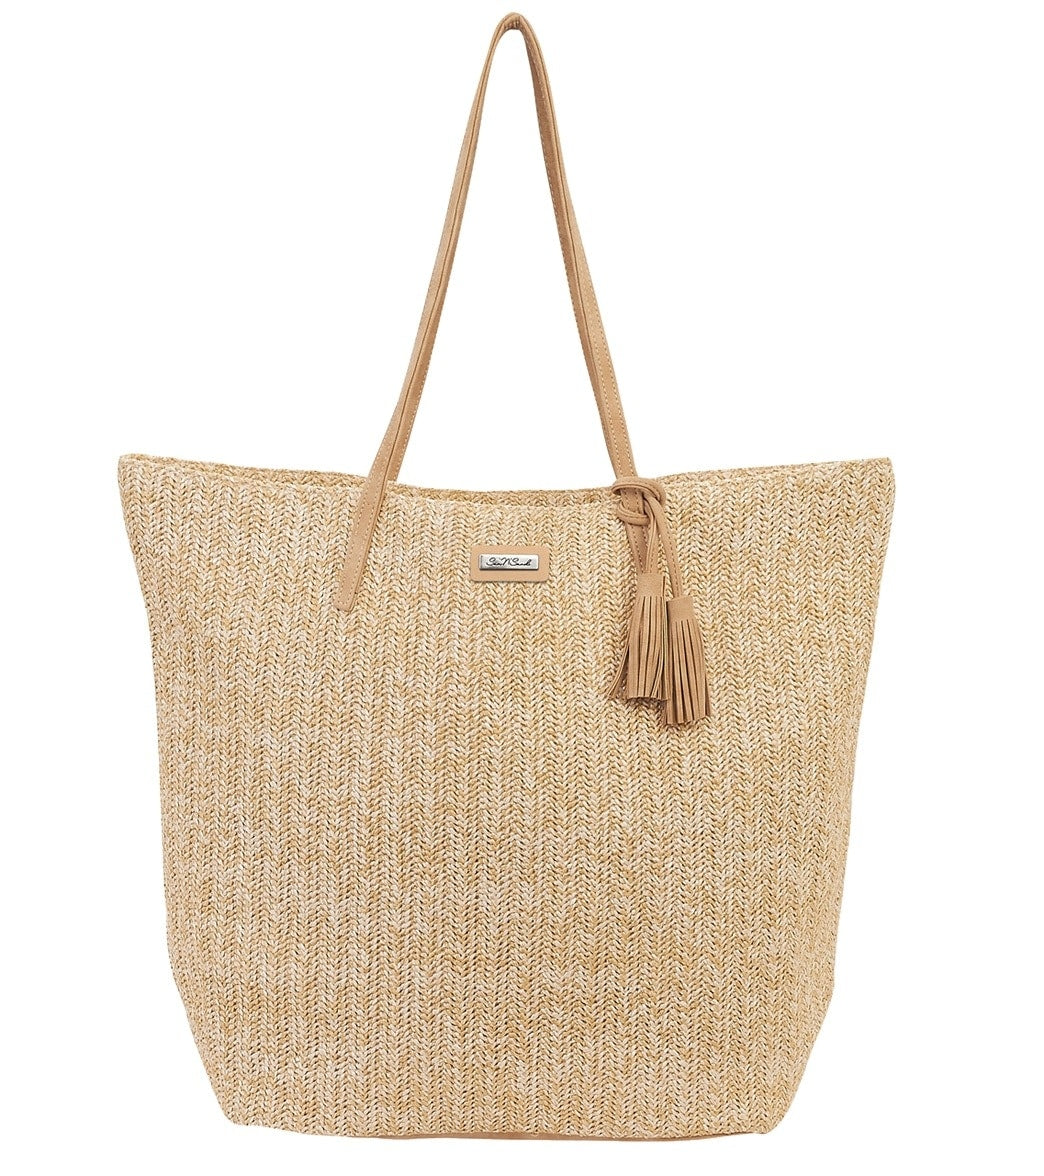 Sun 'N' Sand Handbags